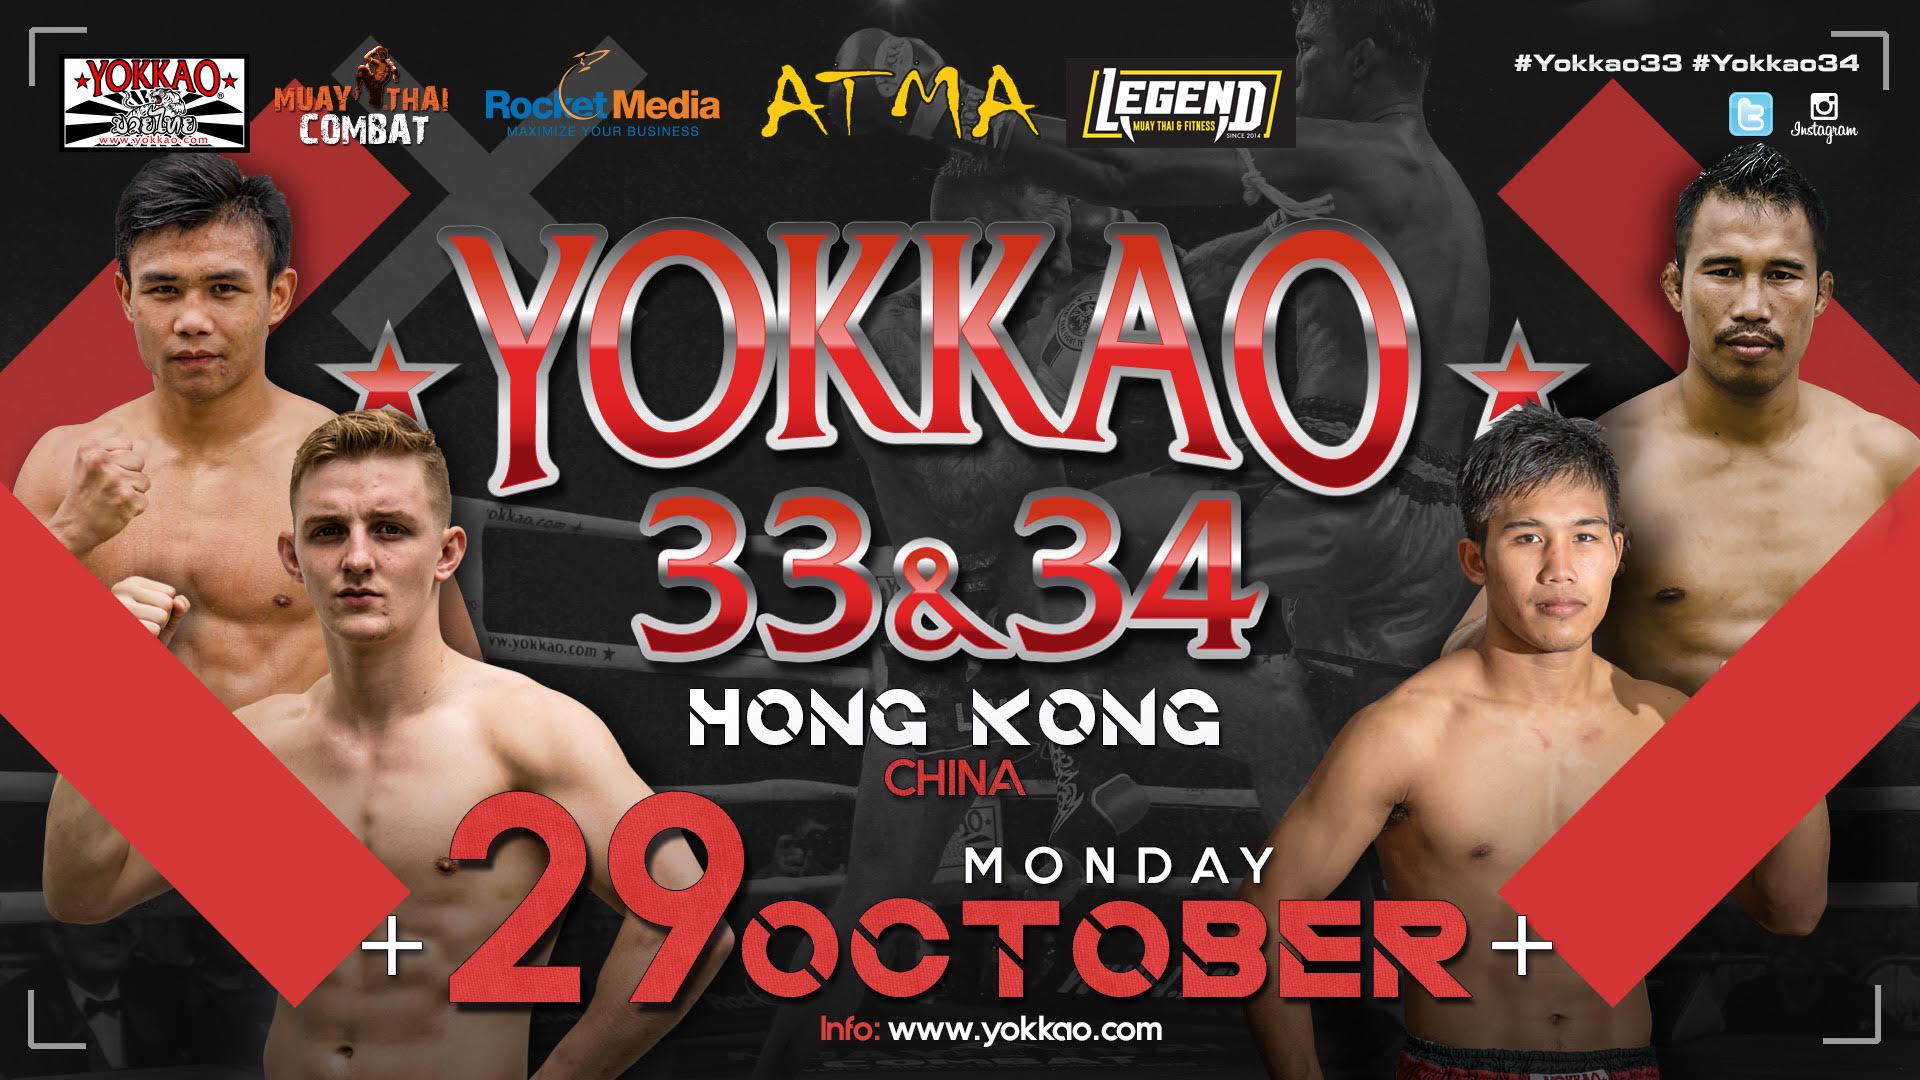 YOKKAO Fight Team Headlines YOKKAO 33 - 34 in Hong Kong